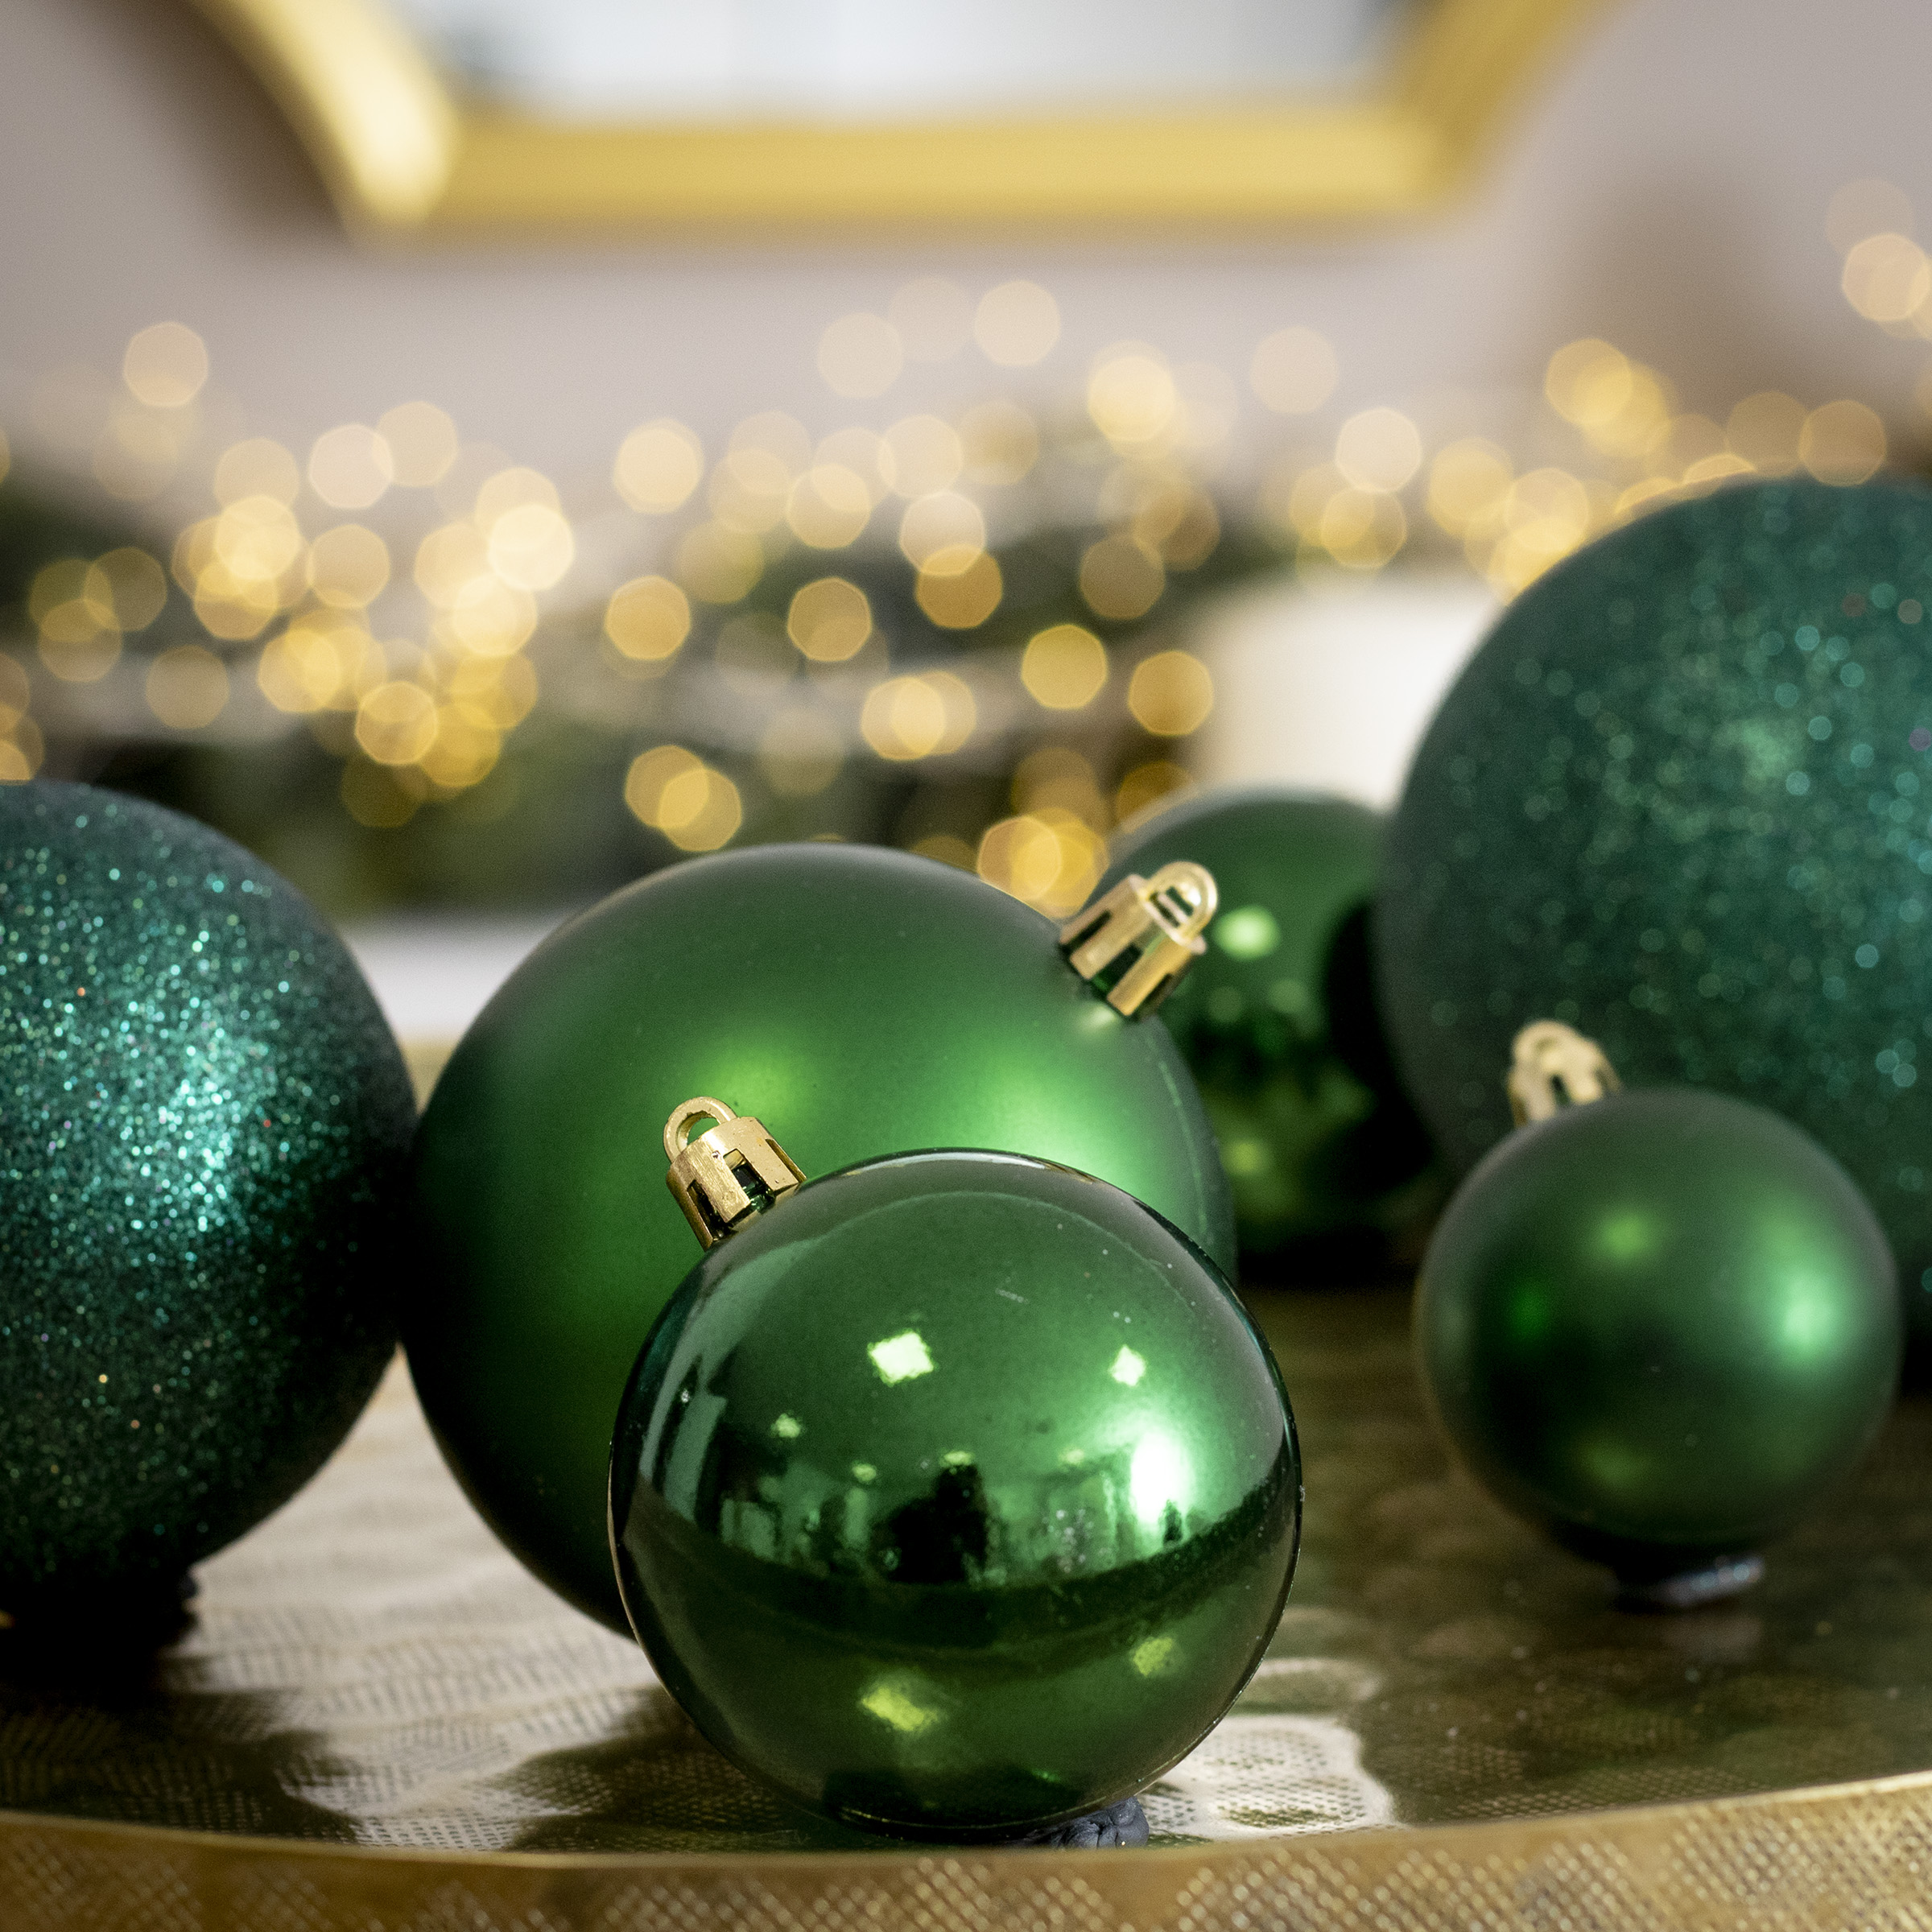 Décoration de Noël : une boite de rangement pour les boules et accessoires  de Noël